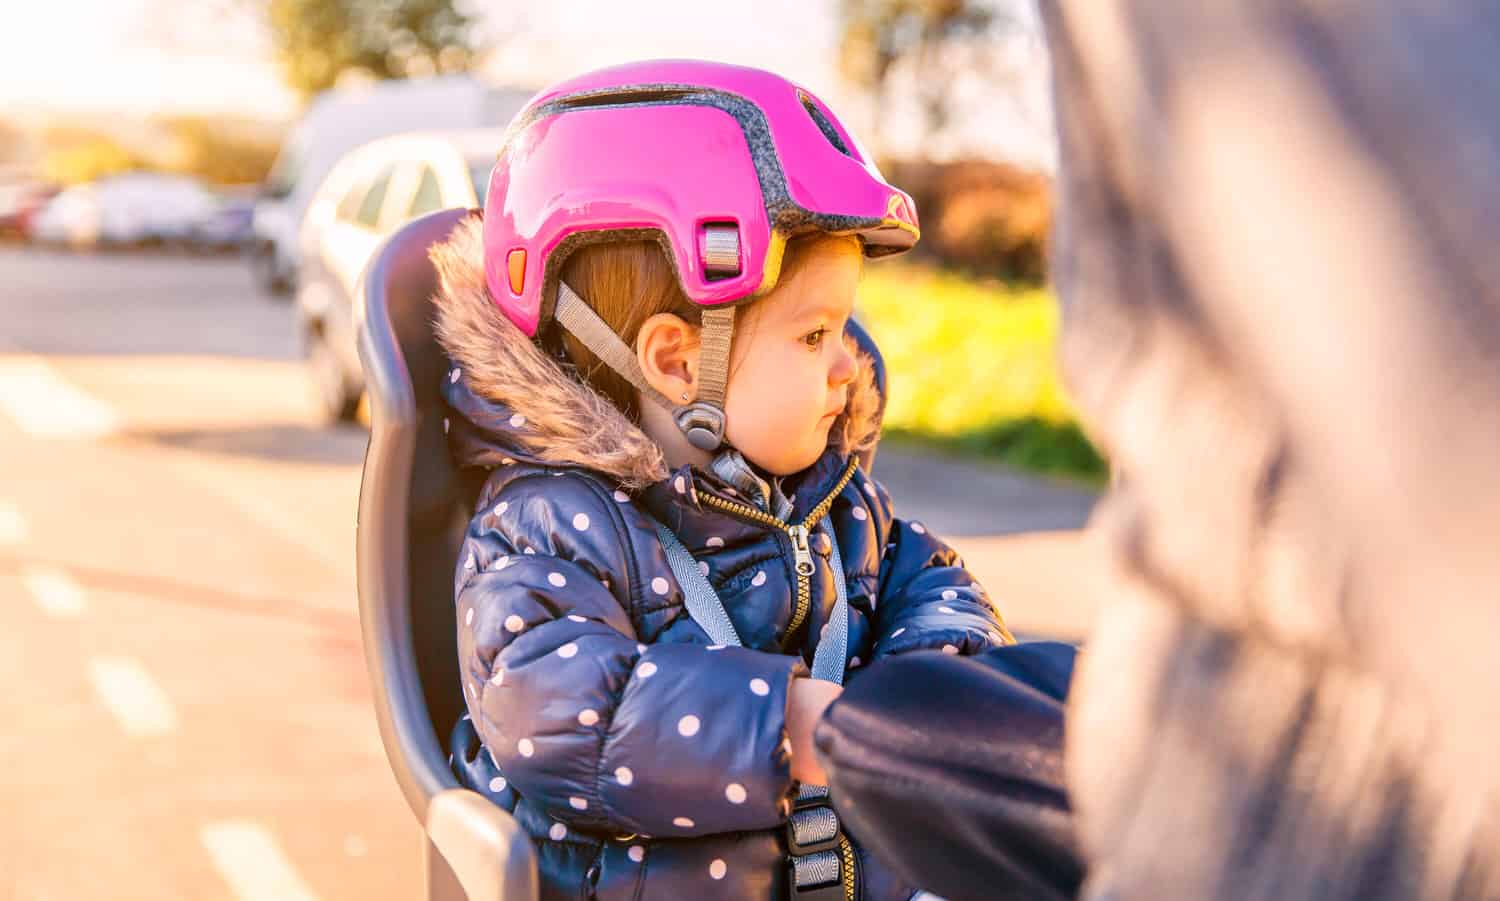 Kindersitze sind Fahrradzubehör